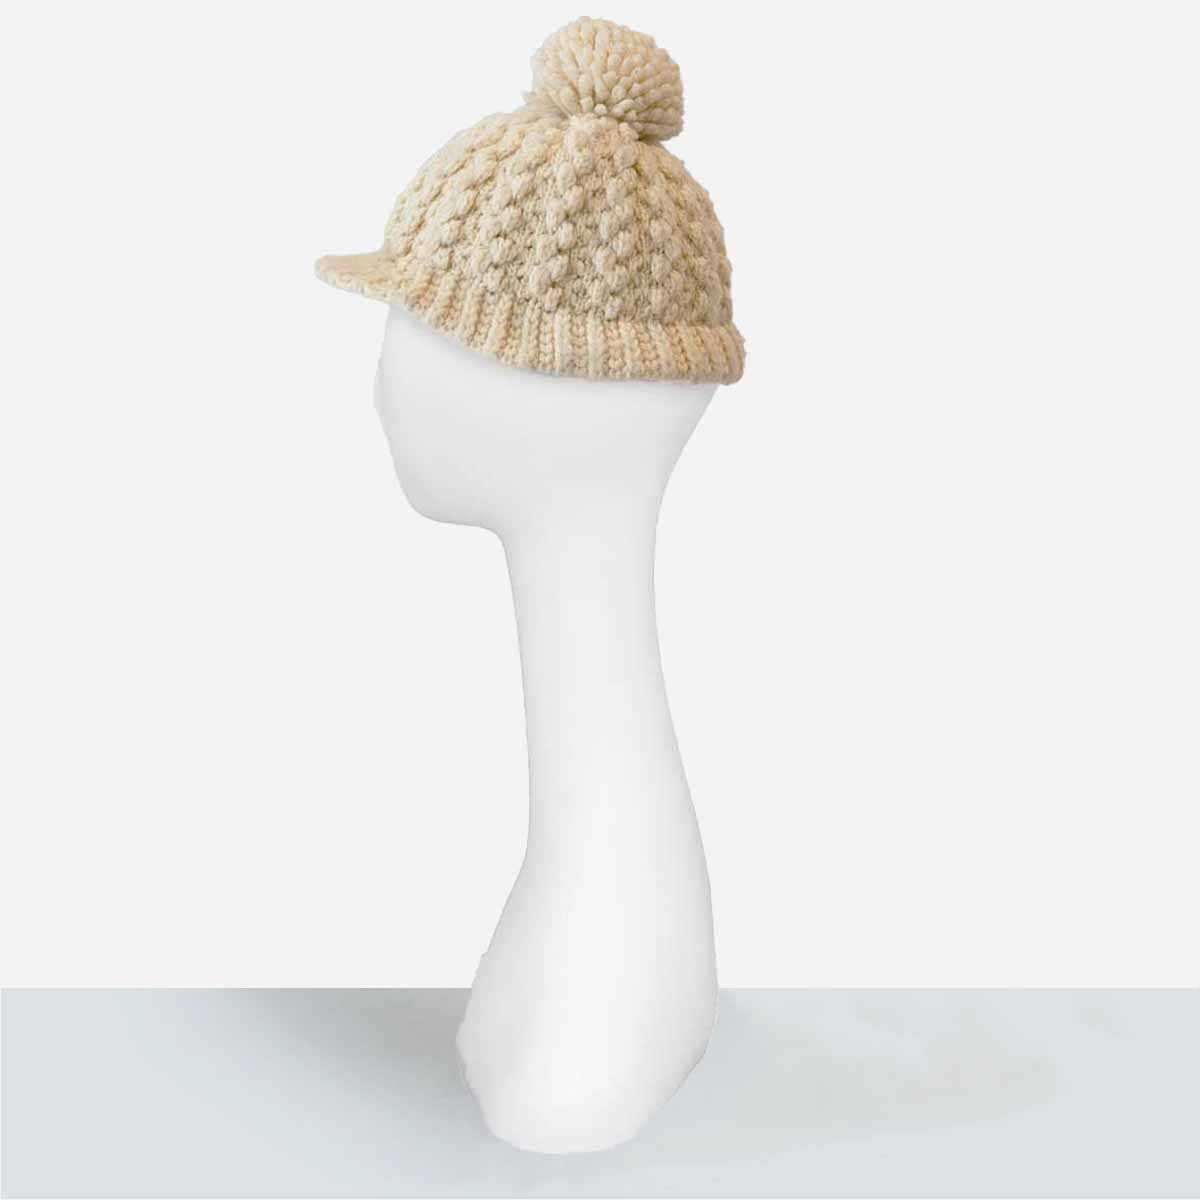 cream knit cap with brim